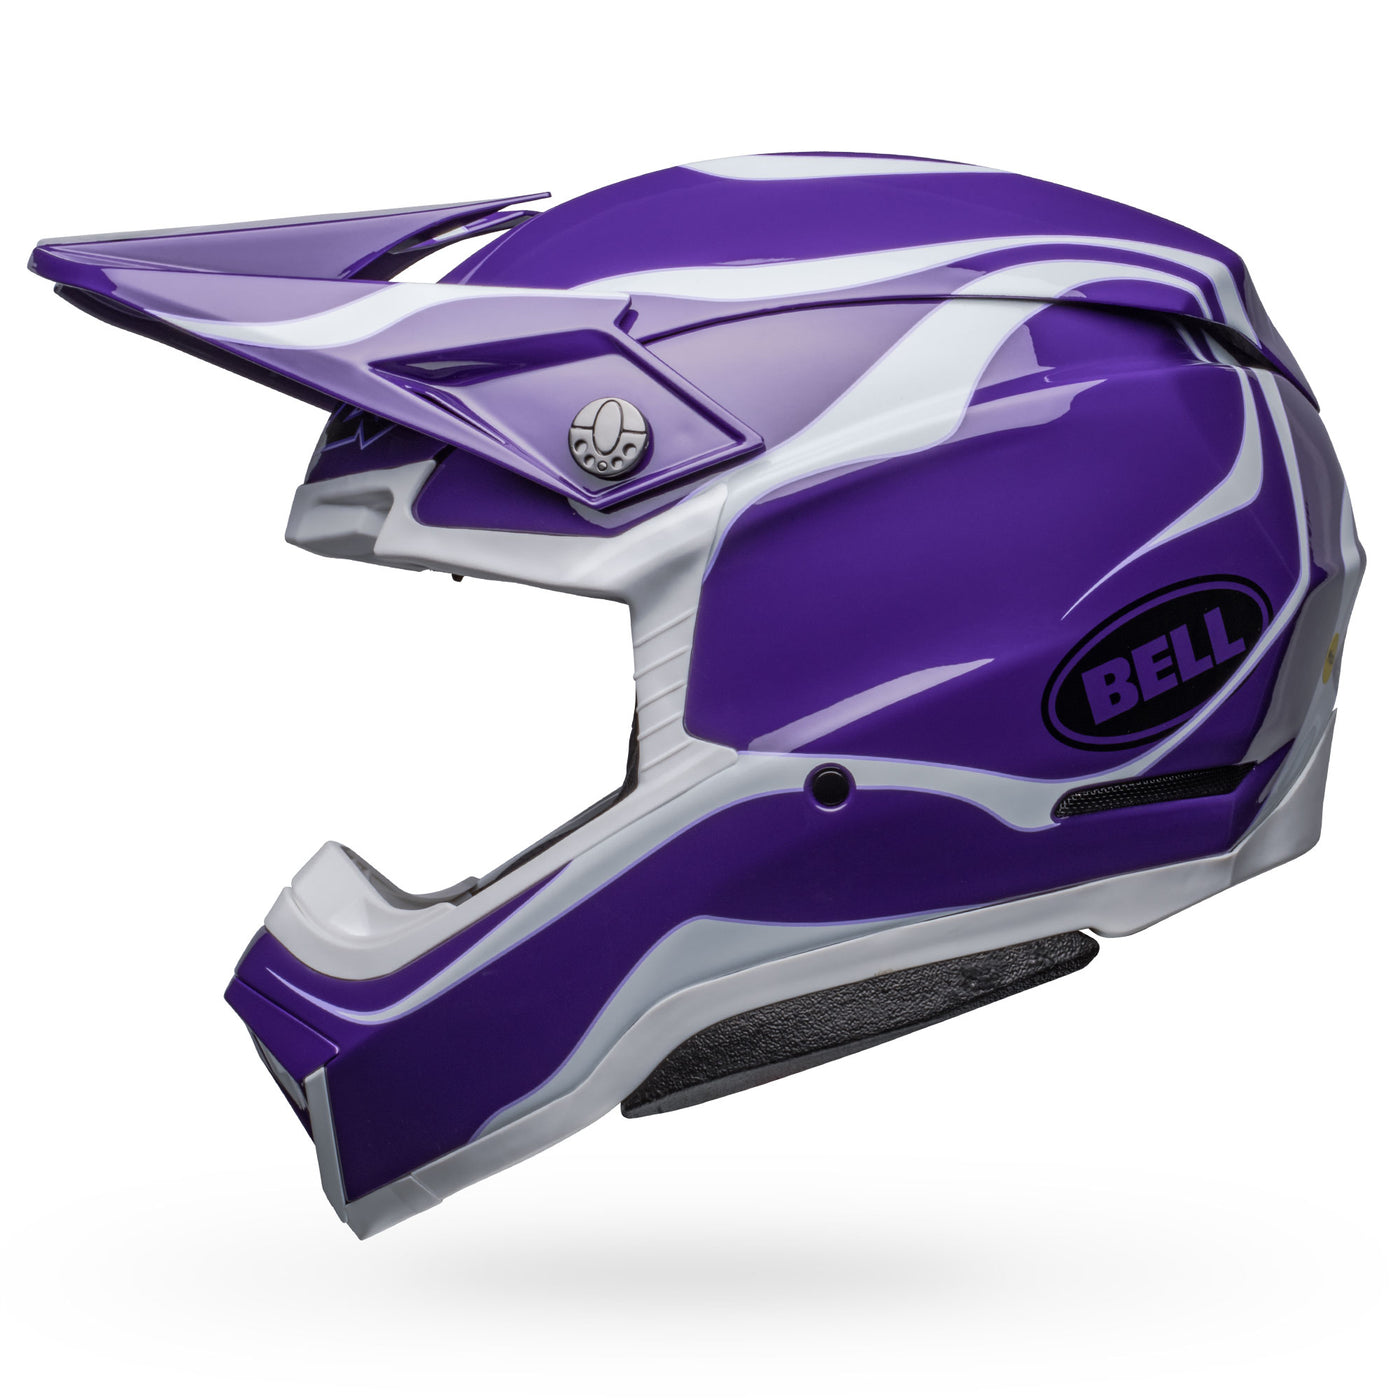 bell moto 10 spherical le dirt motorcycle helmet slayco gloss purple white left